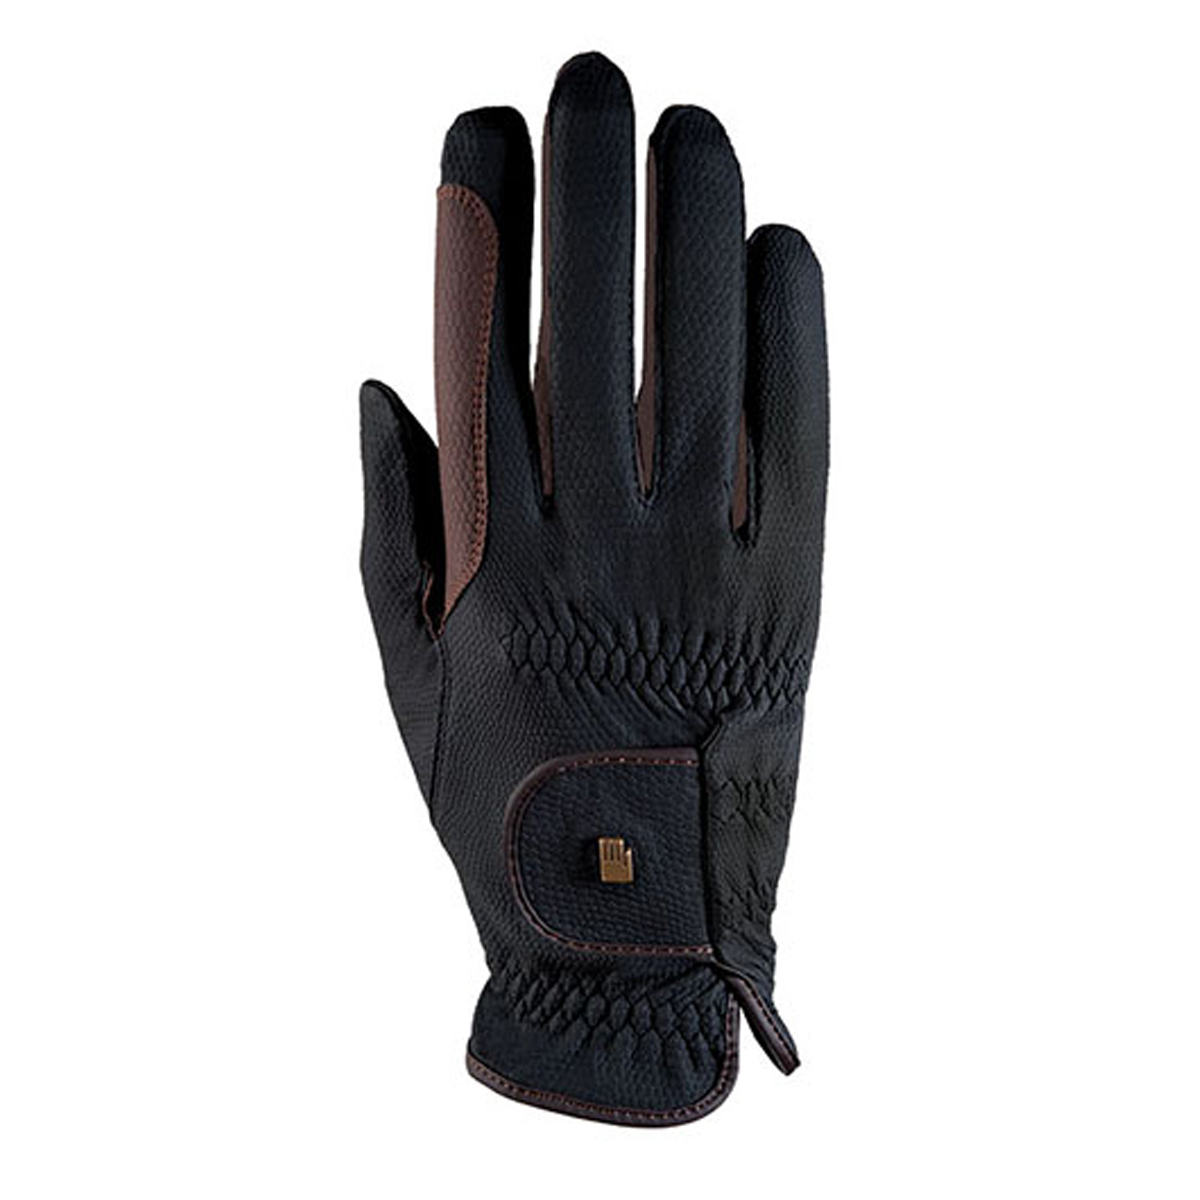 Handschoenen Roeckl Malta Grip Bicolor, 6,5 in black/brown